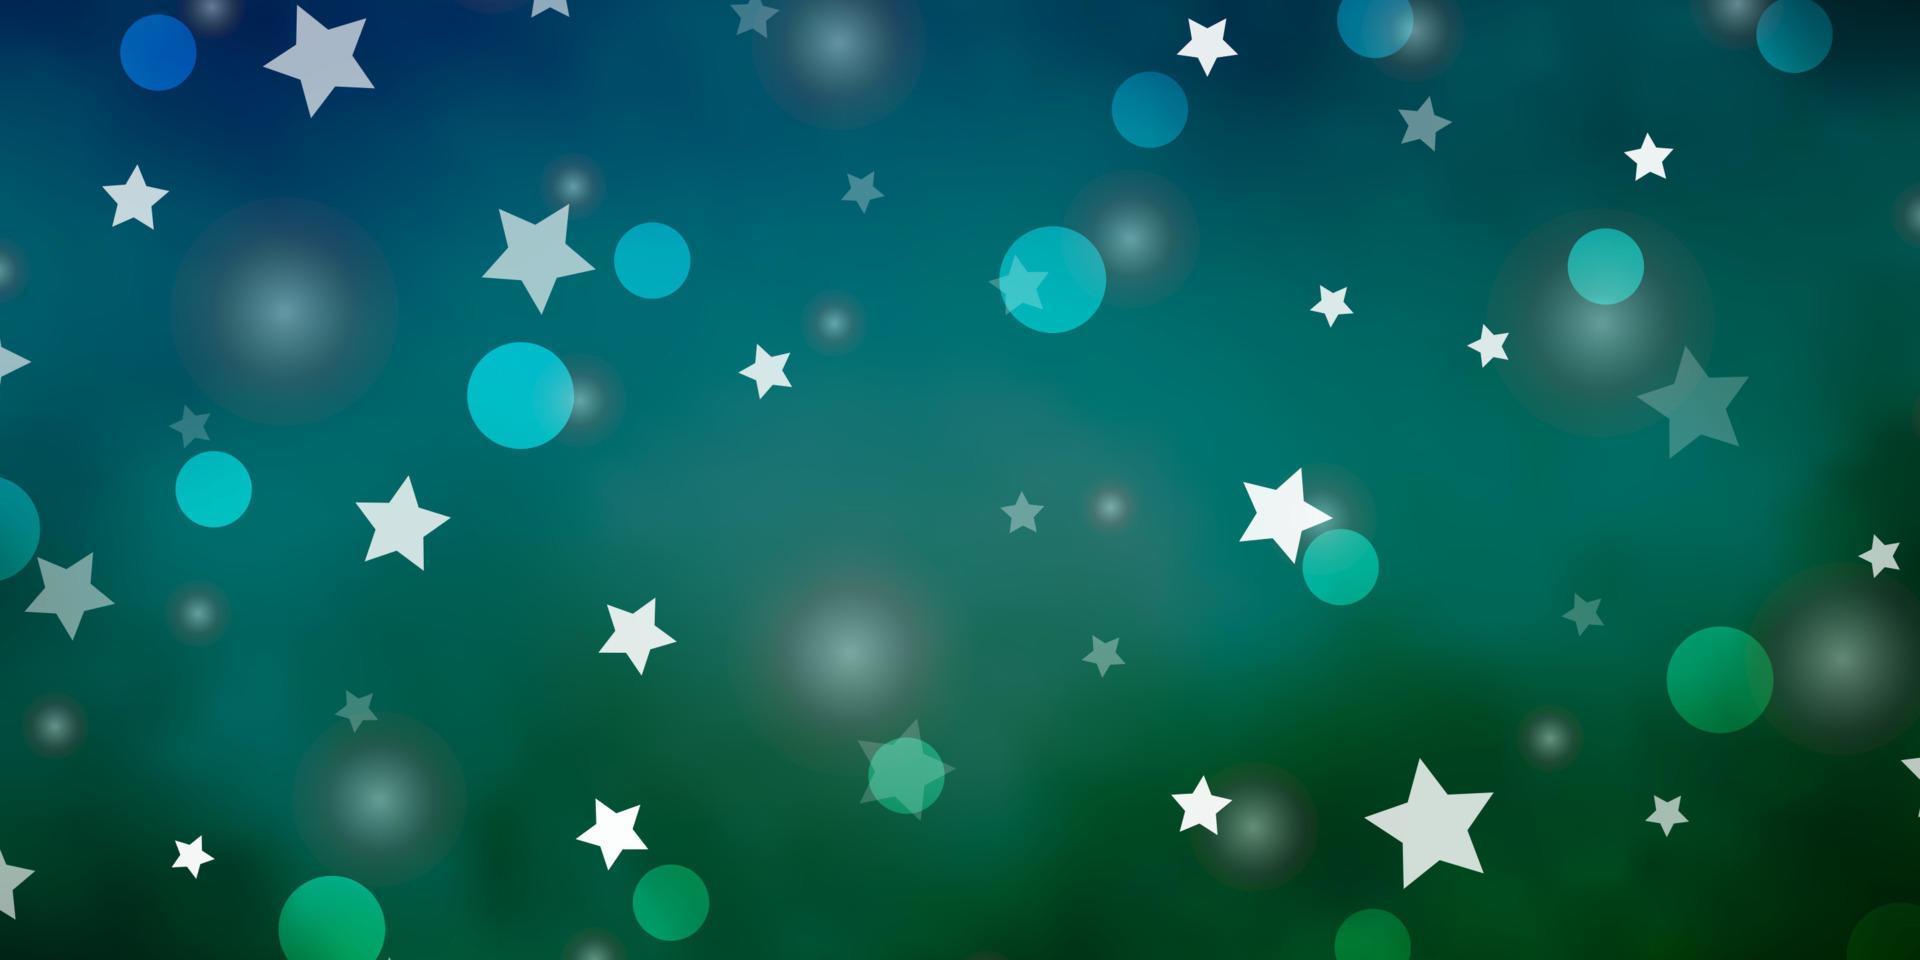 fundo vector azul, verde claro com círculos, estrelas.